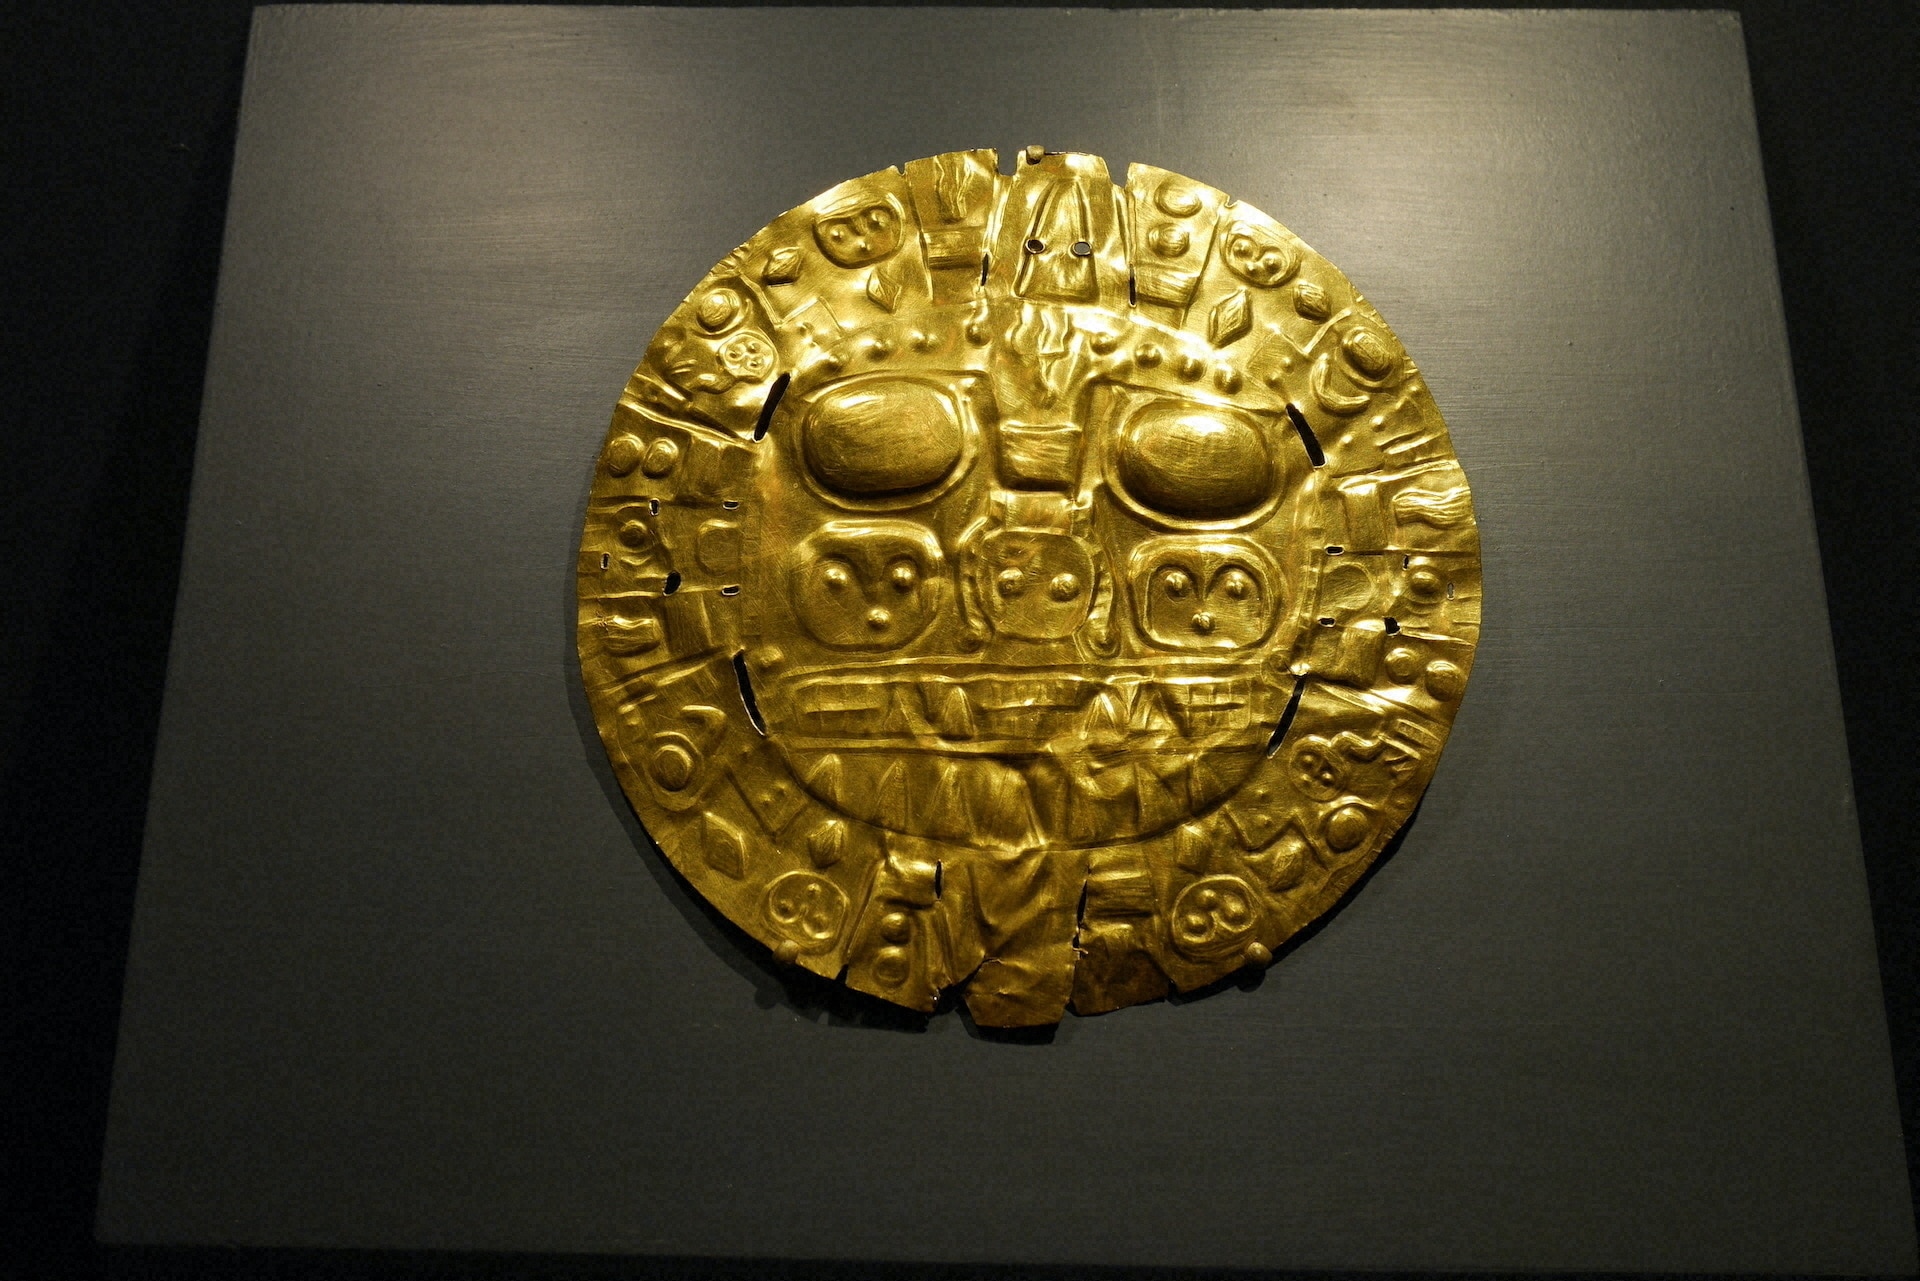 インカ帝国に伝わったという黄金の円盤